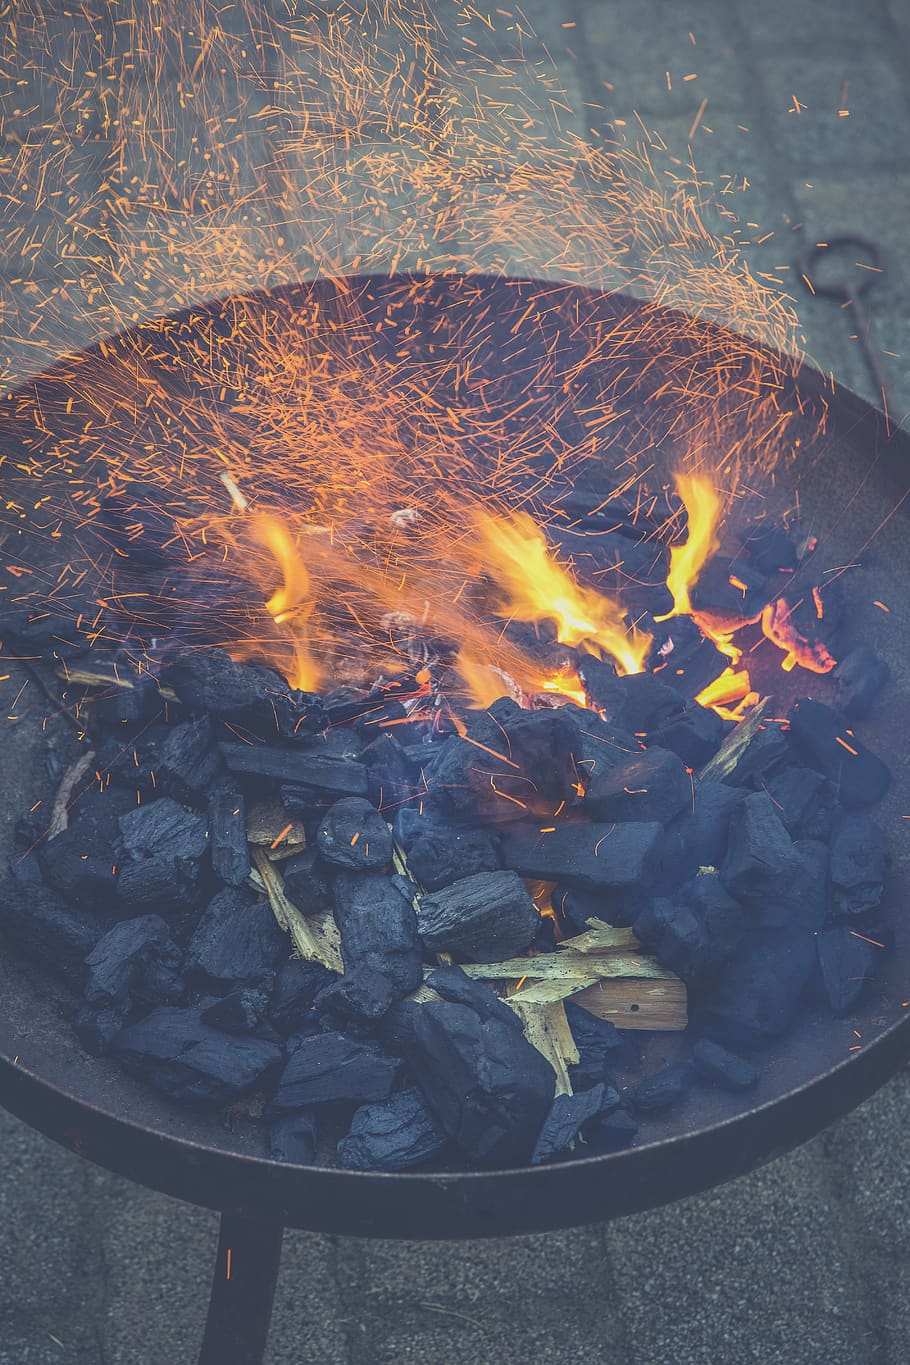 fire, fire bowl, embers, flame, burn, hot, blaze, garden, grill, heat